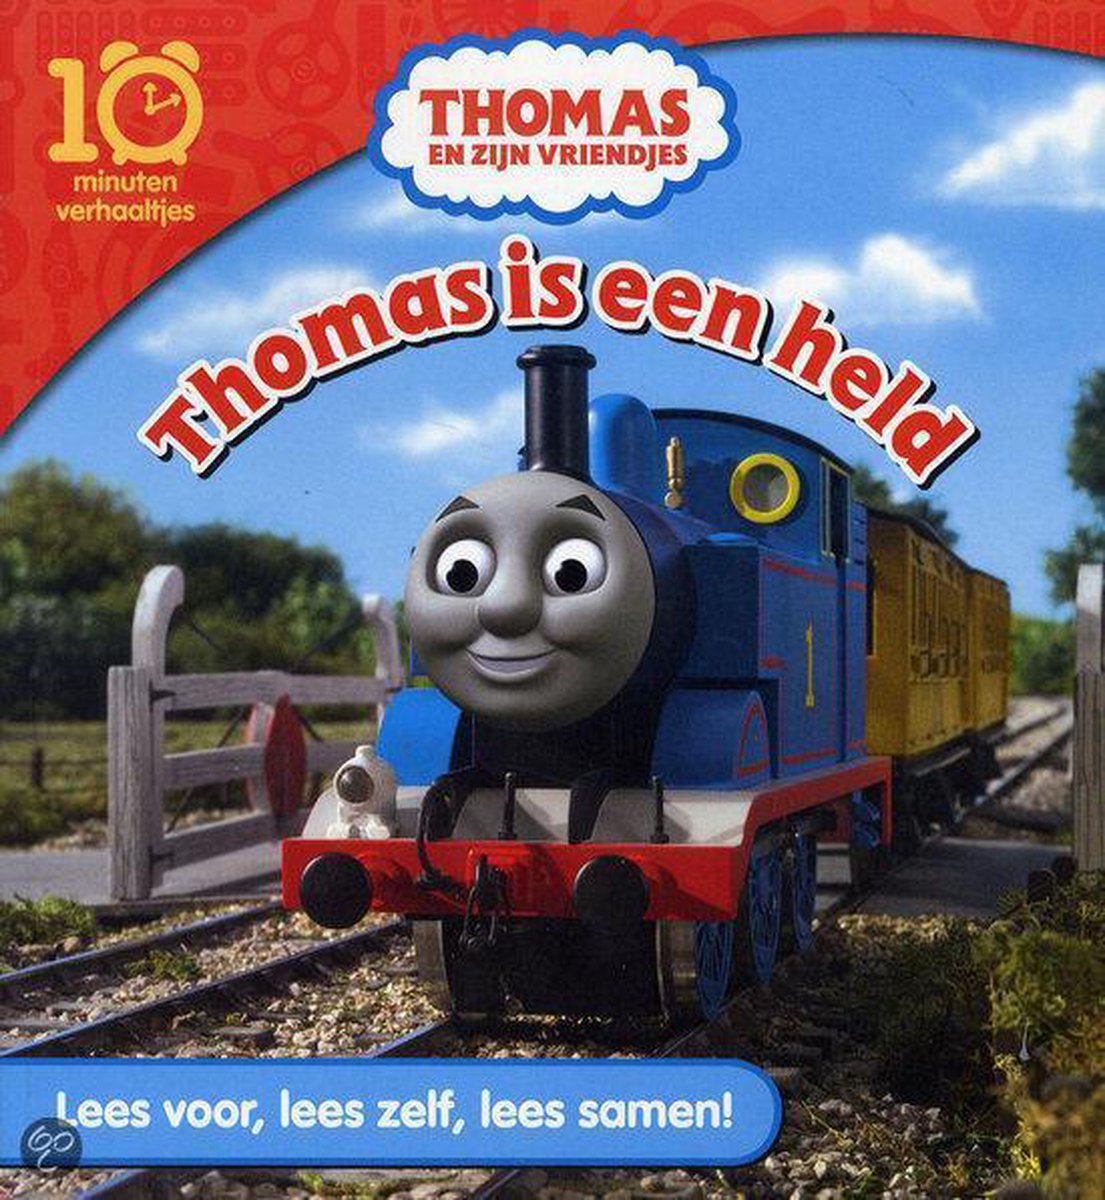 Thomas is een held / Thomas de Stoomlocomotief